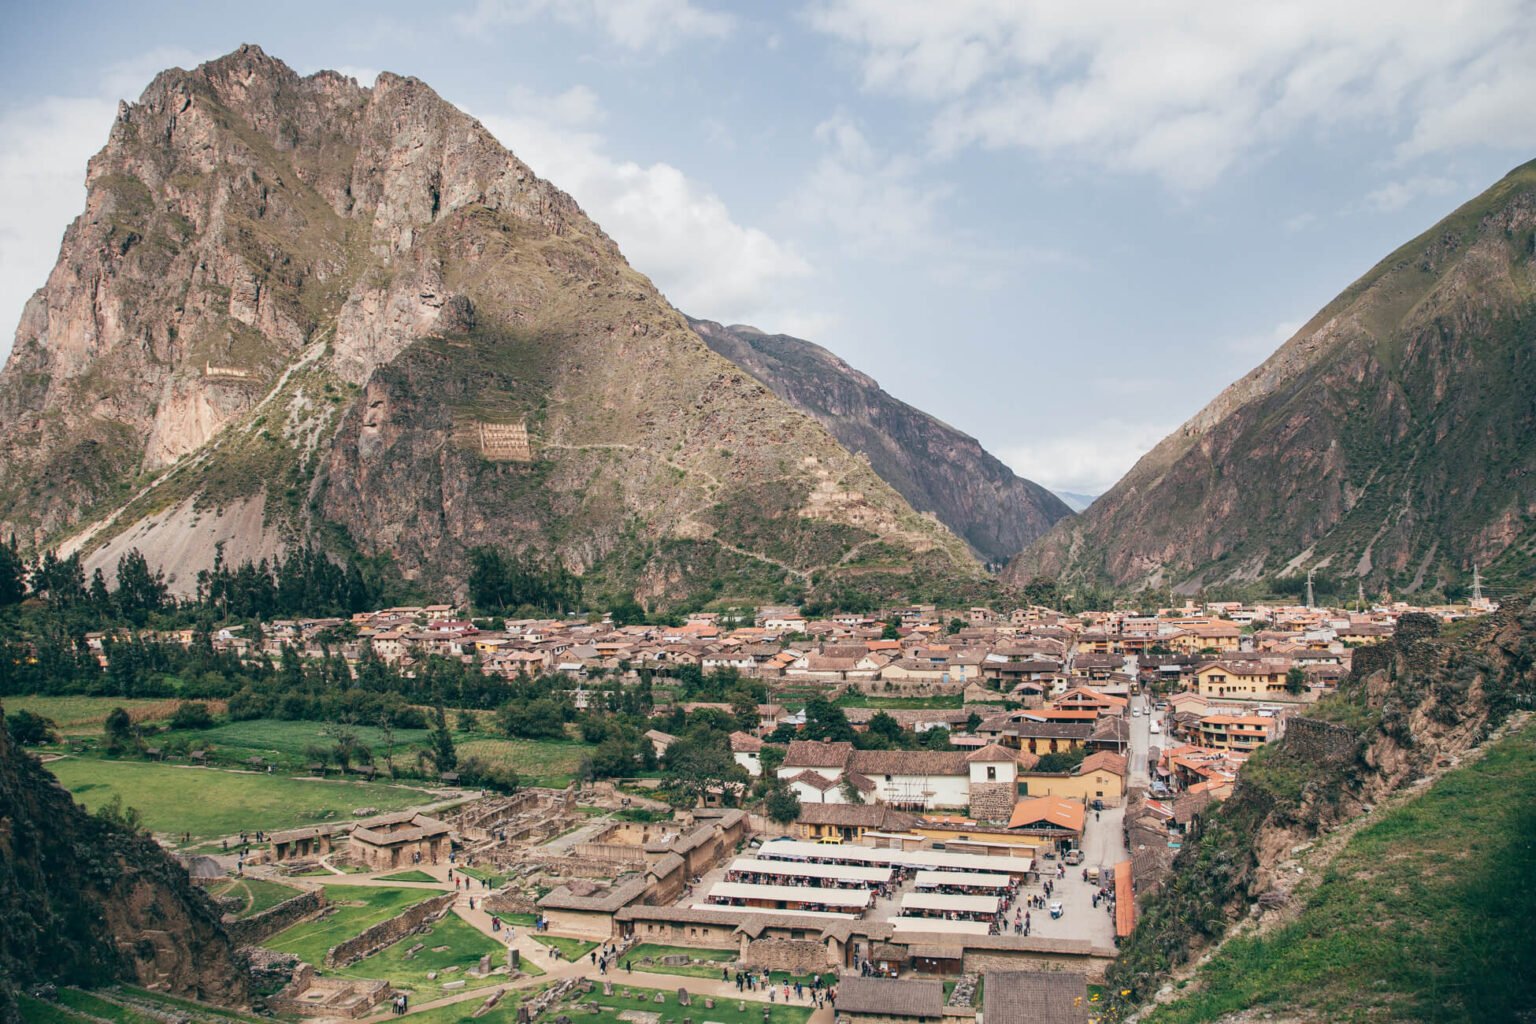 Cidade de Ollantaytambo. As construções visíveis no alto da montanha foram levantadas pelos incas